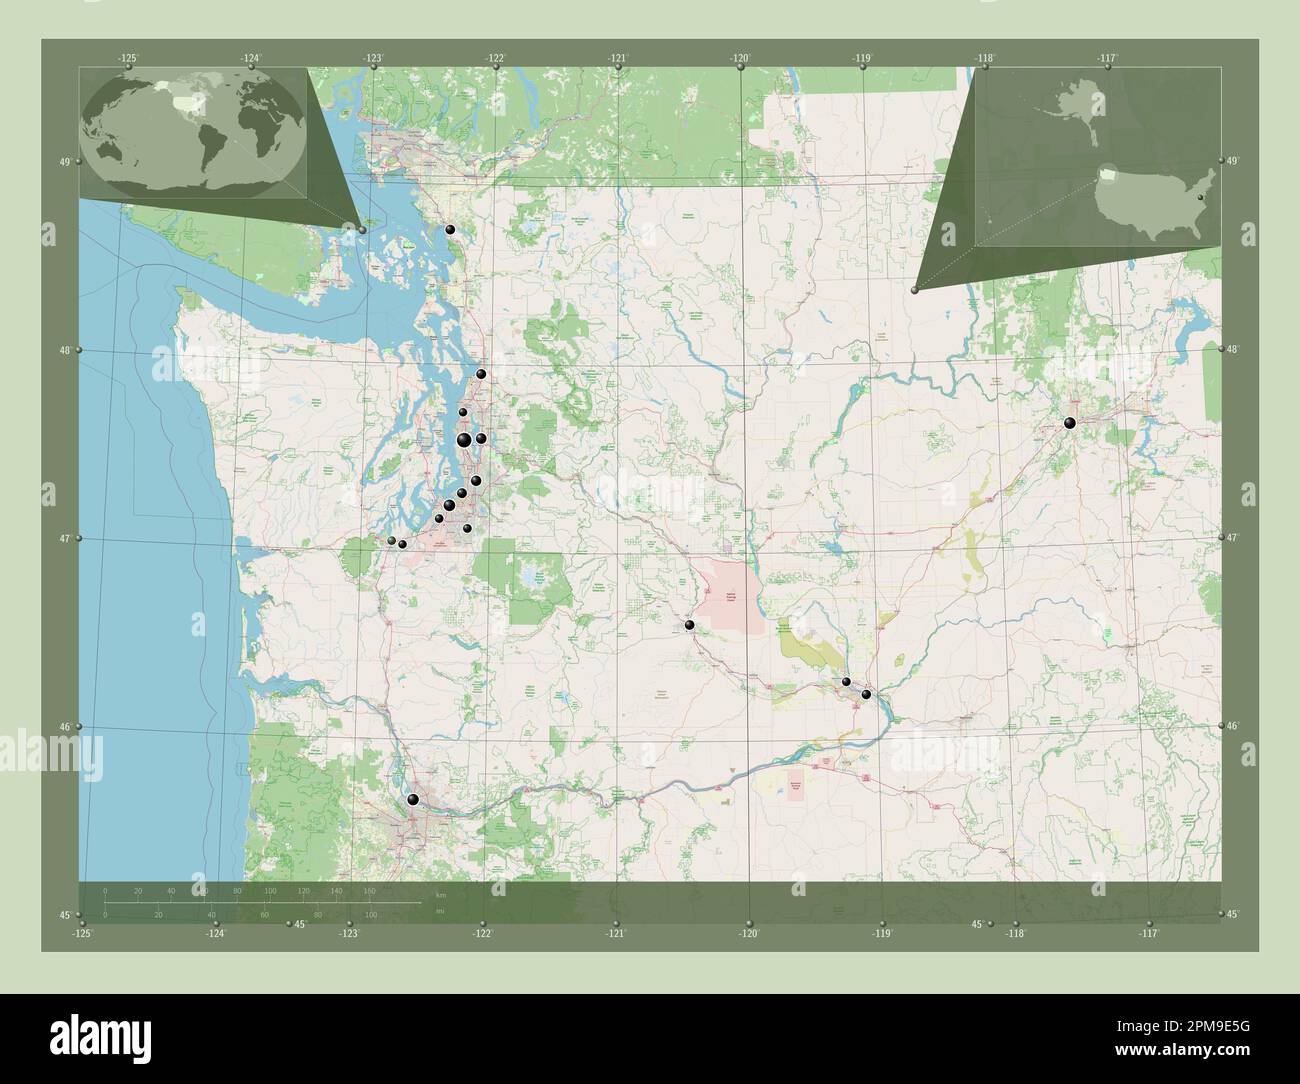 Washington, Bundesstaat der Vereinigten Staaten von Amerika. Straßenkarte Öffnen. Standorte der wichtigsten Städte der Region. Eckkarten für zusätzliche Standorte Stockfoto